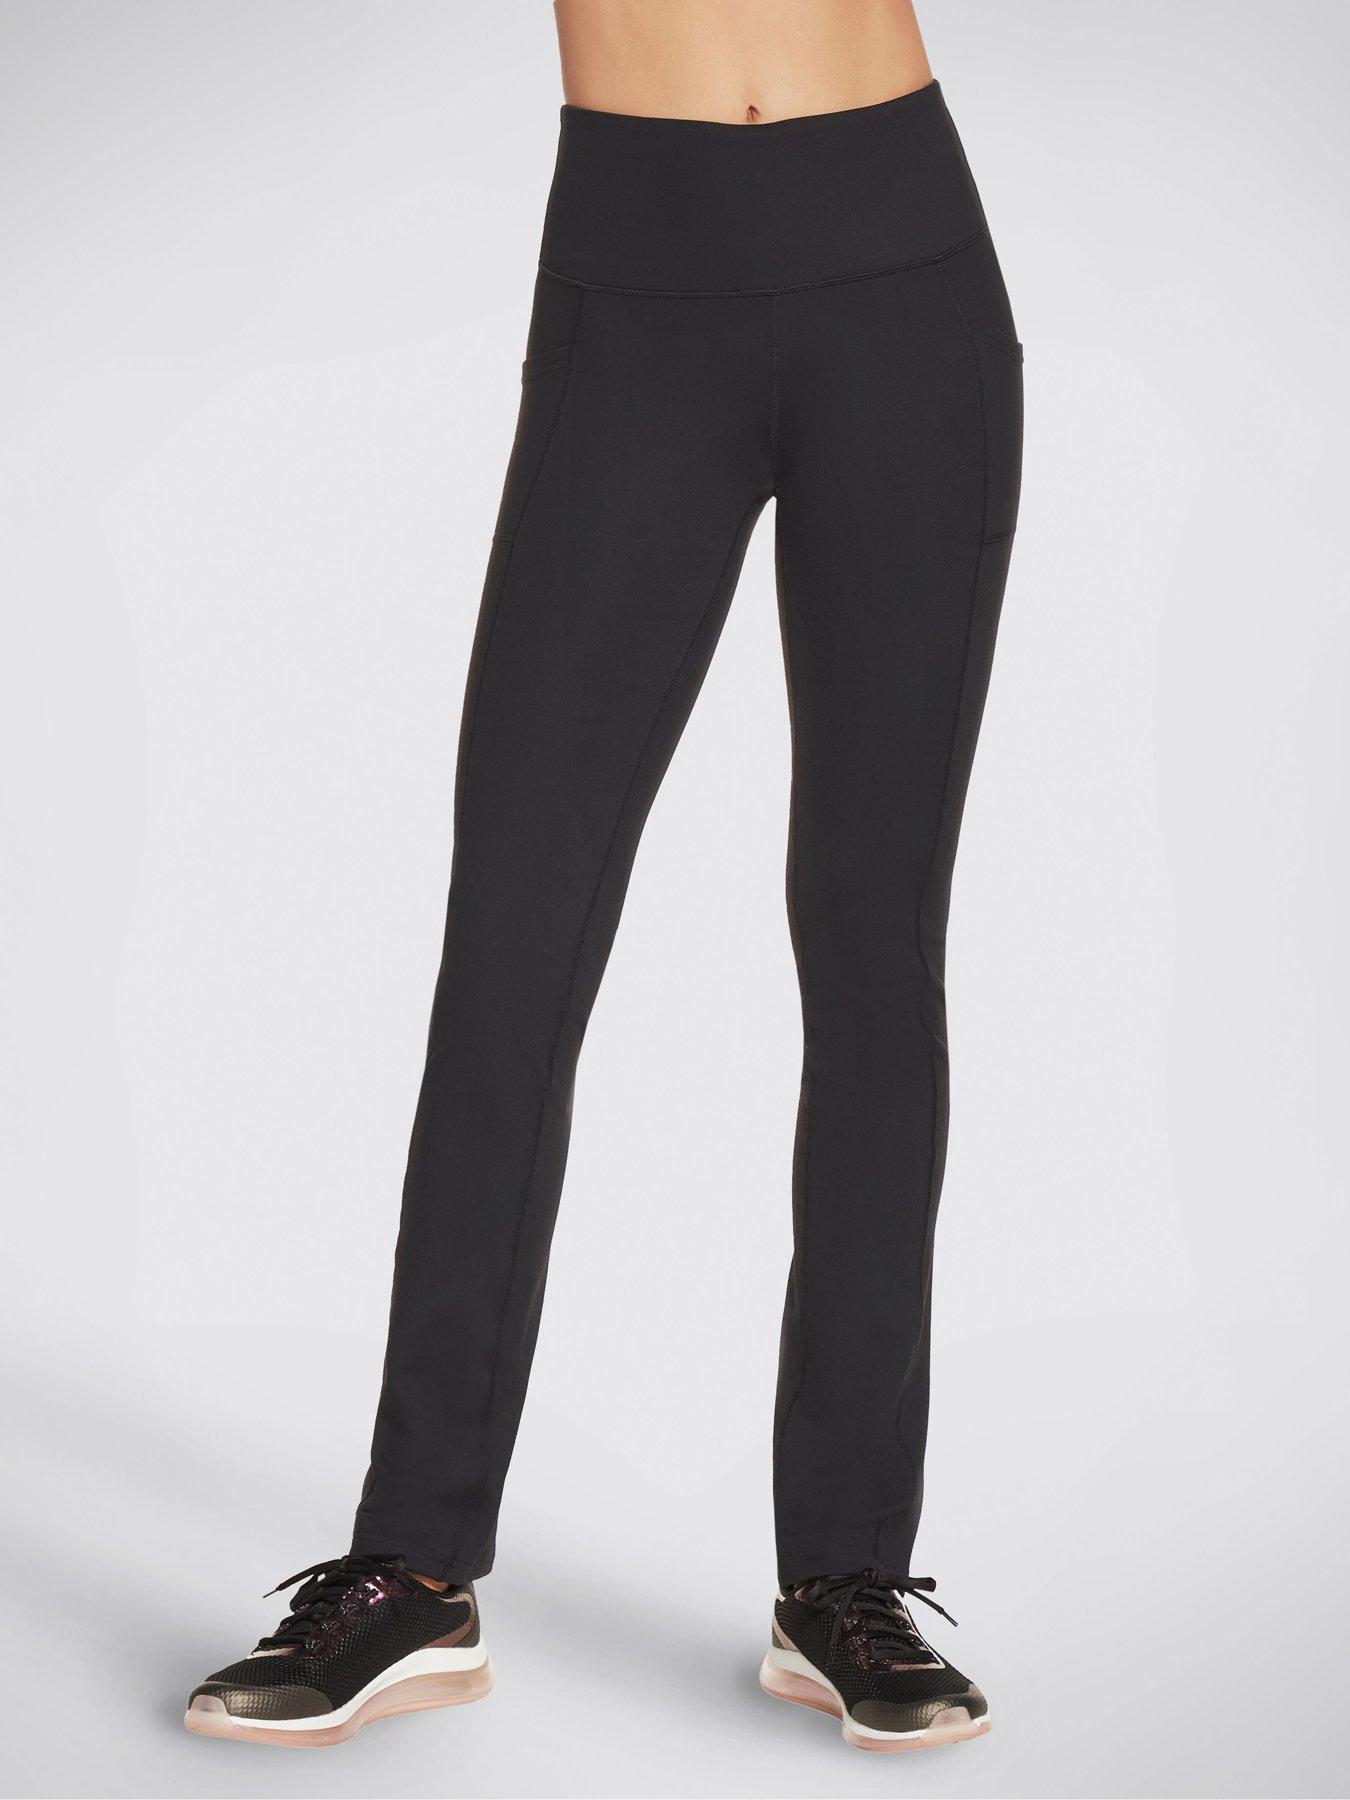 Skechers Skechers Women's Knit Gowalk Pant - Bold Black